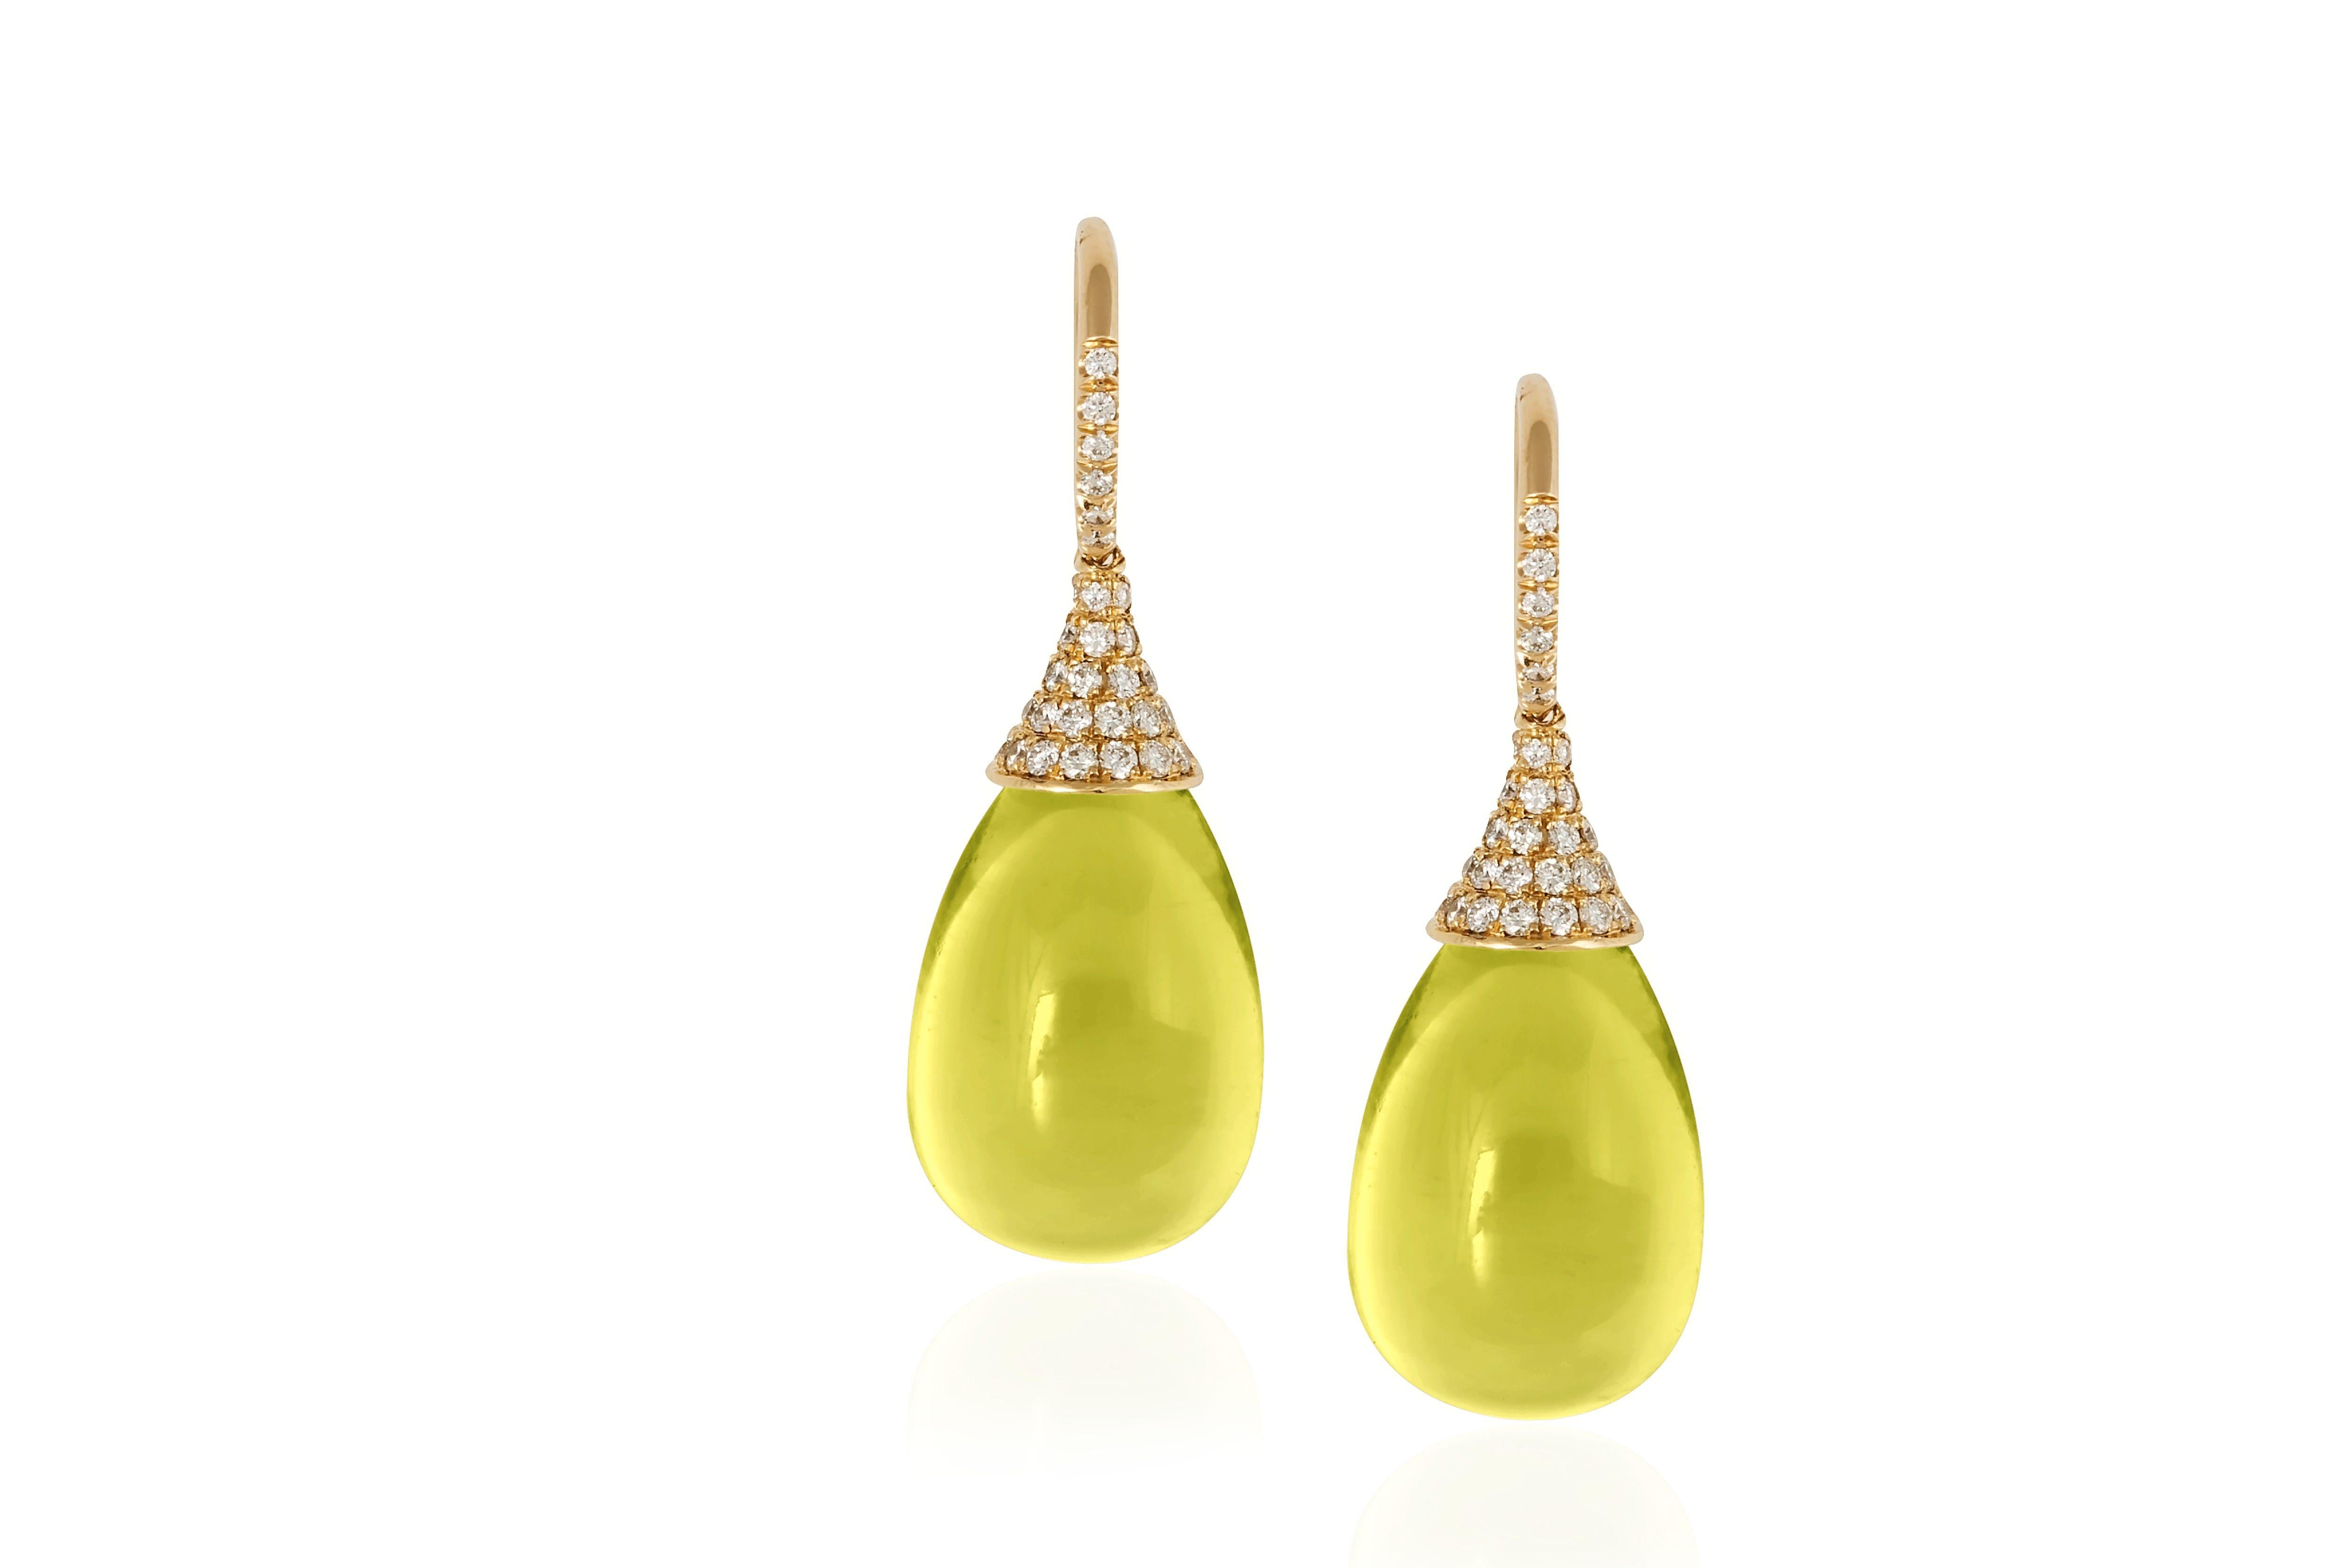 Boucles d'oreilles goutte d'eau en quartz citron avec diamants en or jaune 18K de la collection 'Naughty'
 Taille de la pierre : 19 x 12 mm 
 Diamants : G-H / VS, Poids approx. : 0,75 ct